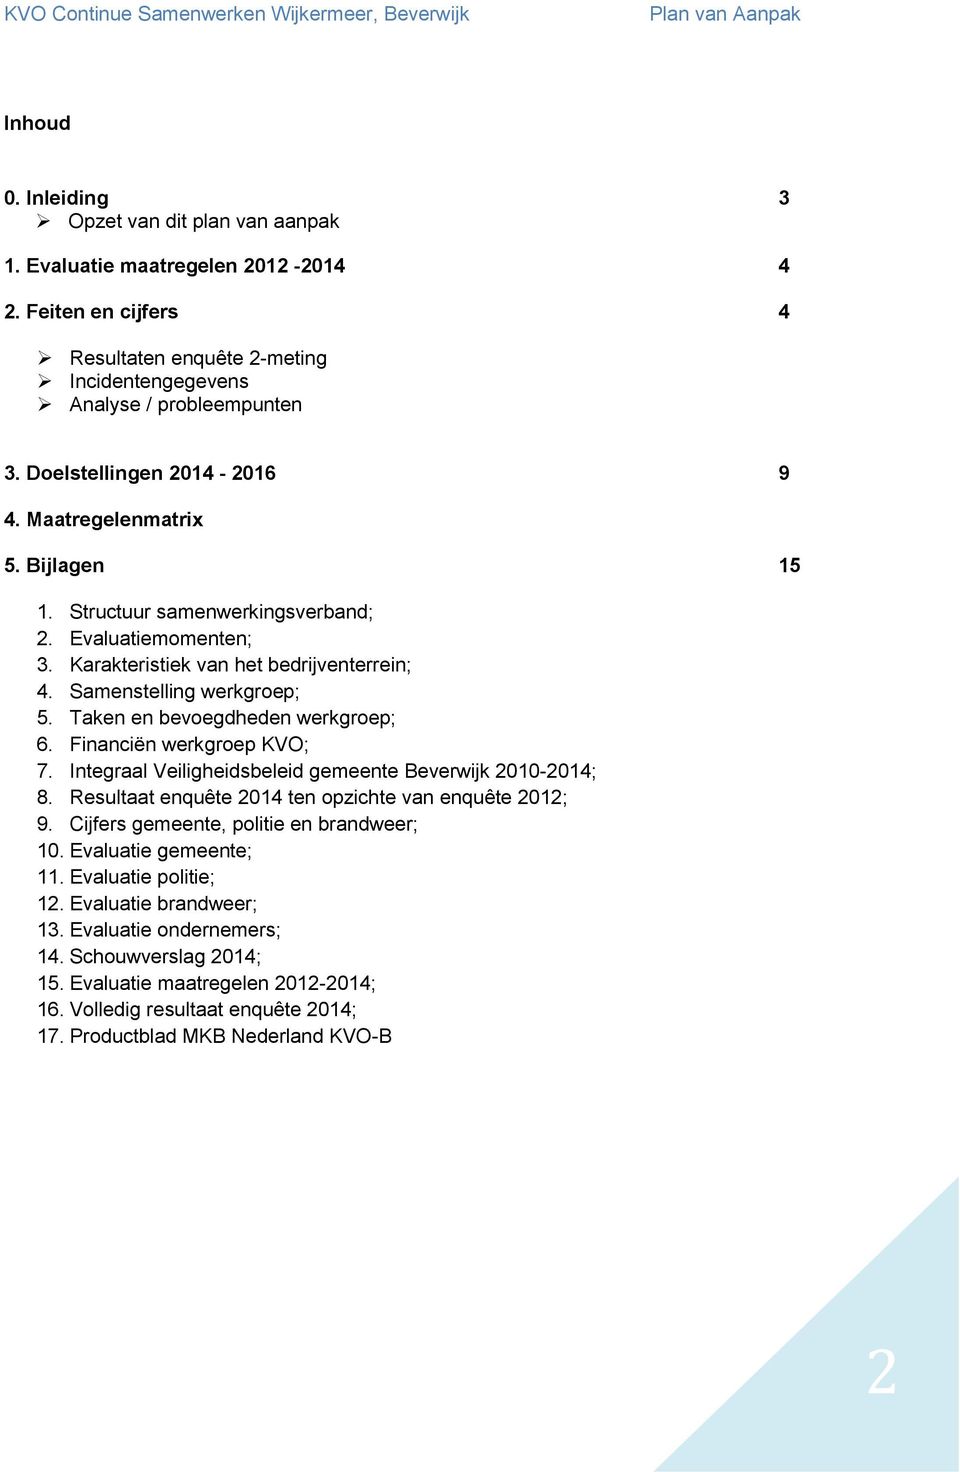 Taken en bevoegdheden werkgroep; 6. Financiën werkgroep KVO; 7. Integraal Veiligheidsbeleid gemeente Beverwijk 2010-2014; 8. Resultaat enquête 2014 ten opzichte van enquête 2012; 9.